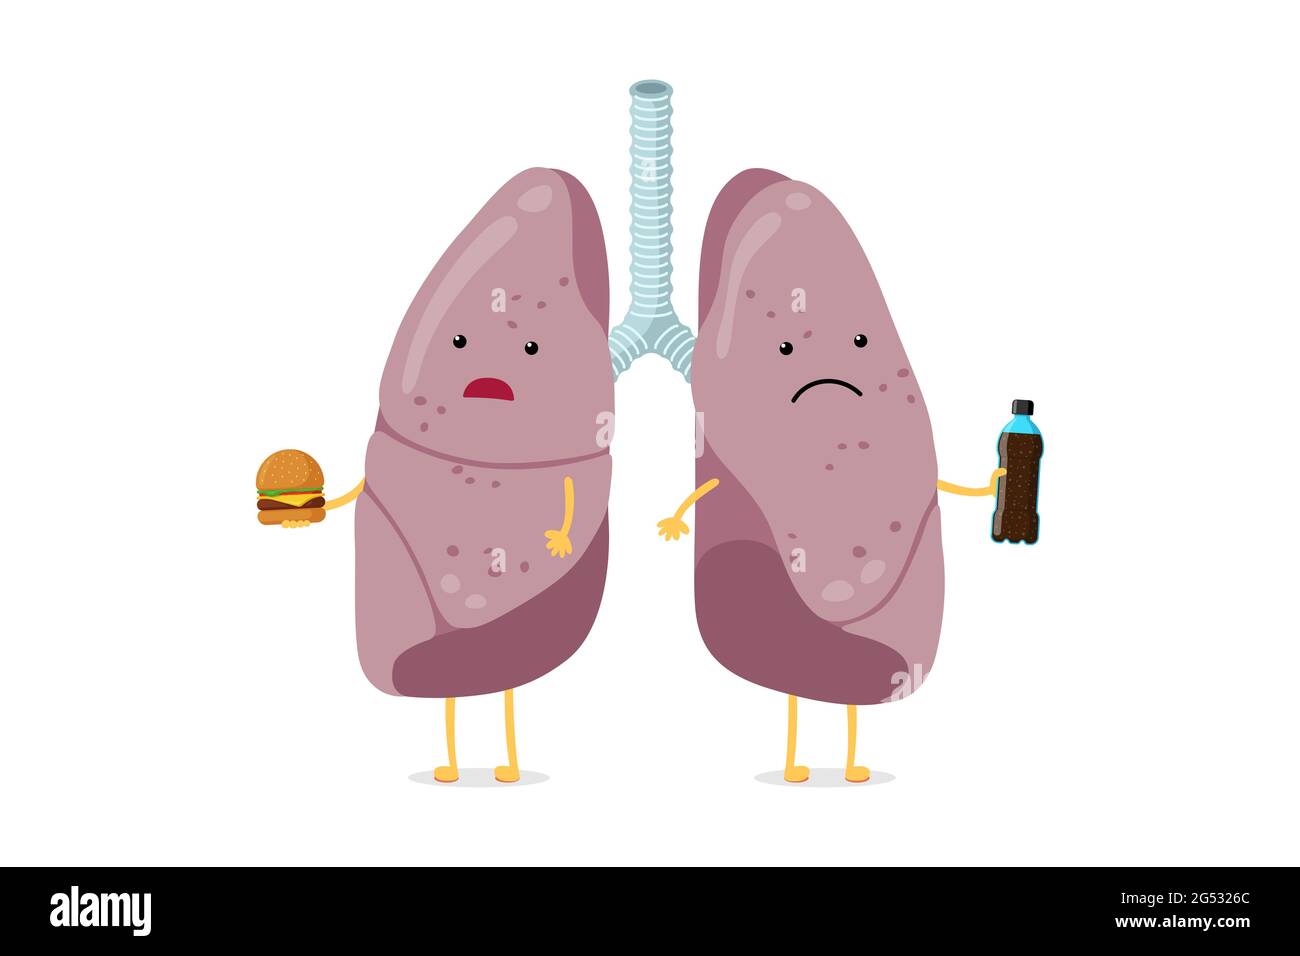 Ungesunde kranke Lungen Cartoon-Figur essen Fast Food und trinken Soda. Das innere Organ des menschlichen Atmungssystems ist überernährend und hat eine schlechte Dyspnoe. Adipositas schlecht gefährliche Gewohnheit sucht Vektor eps Stock Vektor